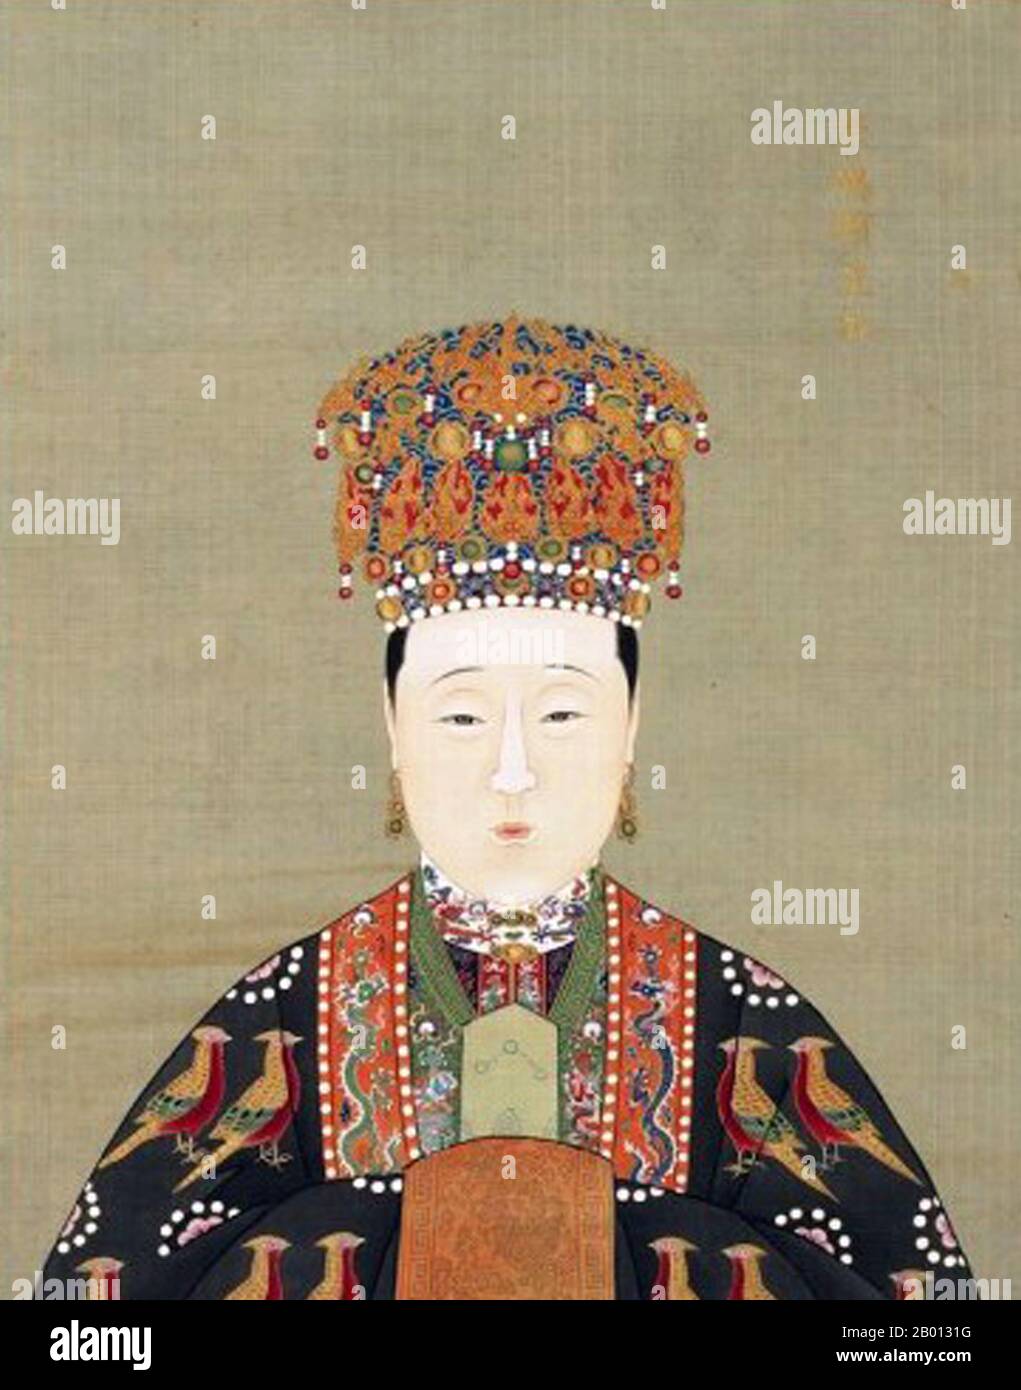 Cina: Imperatrice Xiao Duan Xian (1565-1620), consorte del 14° imperatore Ming Wanli (r. 1572-1620). Pittura a chiocciola sospesa, XVI-XVII secolo. L'imperatrice Xiaoduanxian (morto nel 1620), nome personale Wang Xijie, fu la consorte dell'imperatore Wanli Wanli sulla dinastia Ming. Non gli portava figli, era conosciuta per la sua solenne maniera, la pietà filiale e la crudeltà estrema ai suoi servi, spesso avendo le sue schiere picchiate, talvolta a morte. Divenne la più lunga consorte di imperatrice nella storia cinese. Foto Stock